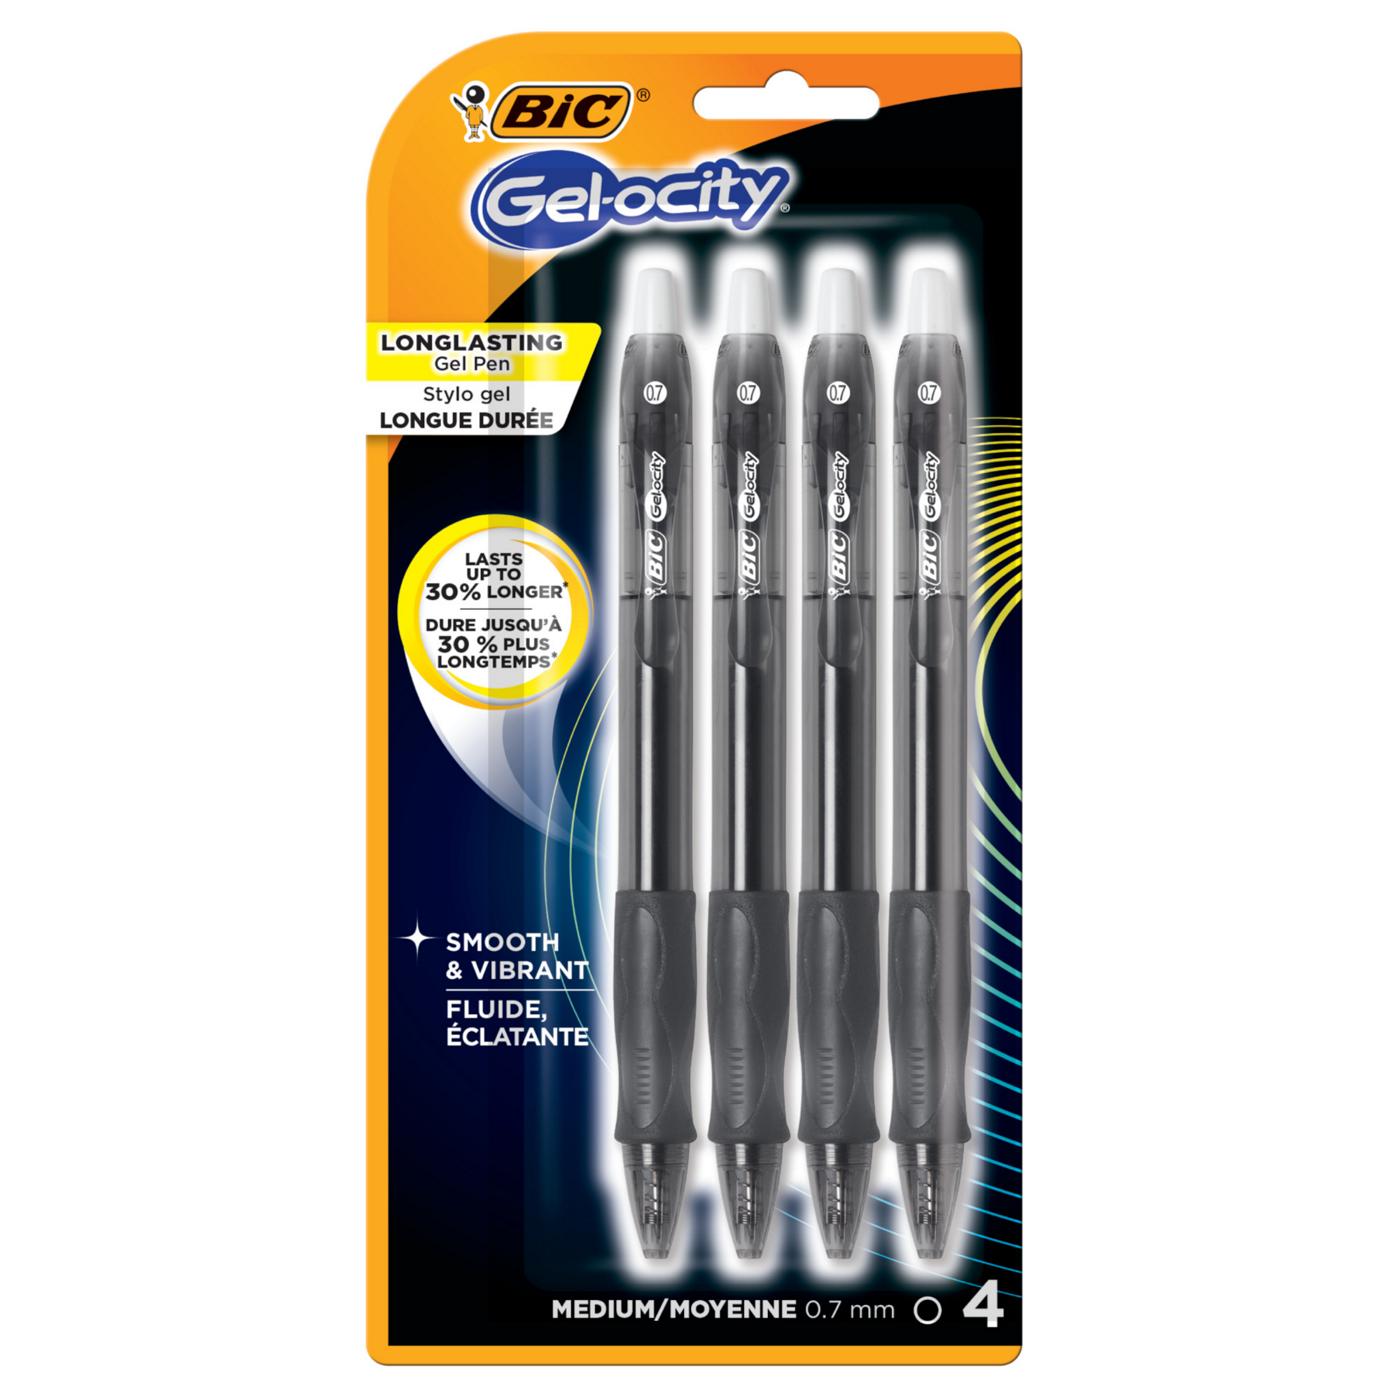 Bic Gel-ocity Retractable Medium Black Gel Pens - Shop Pens at H-E-B